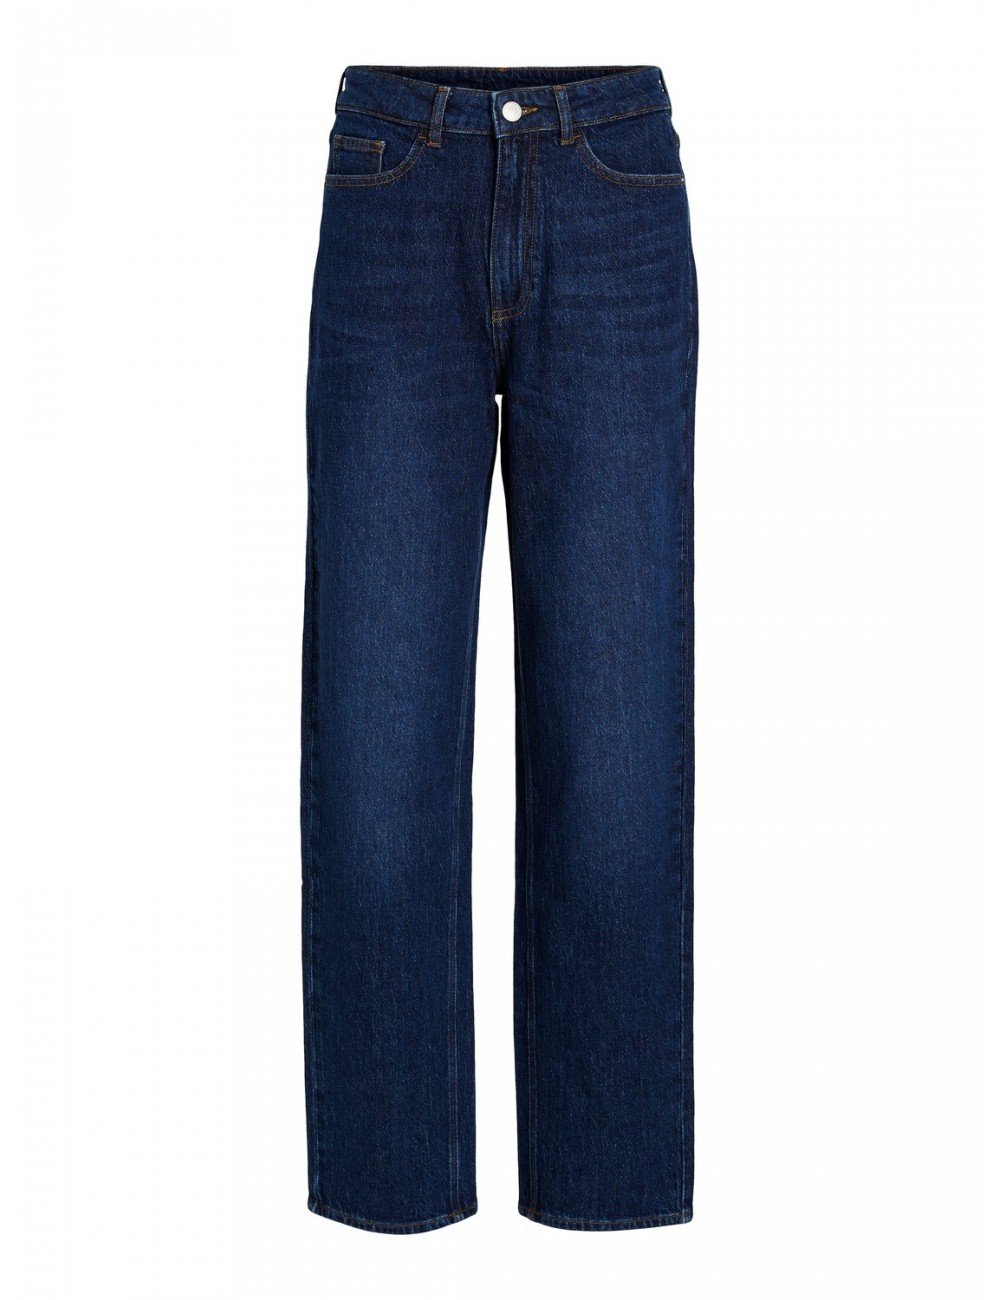 Jeans modelo Kelly con lavado azul oscuro. Marca Vila.